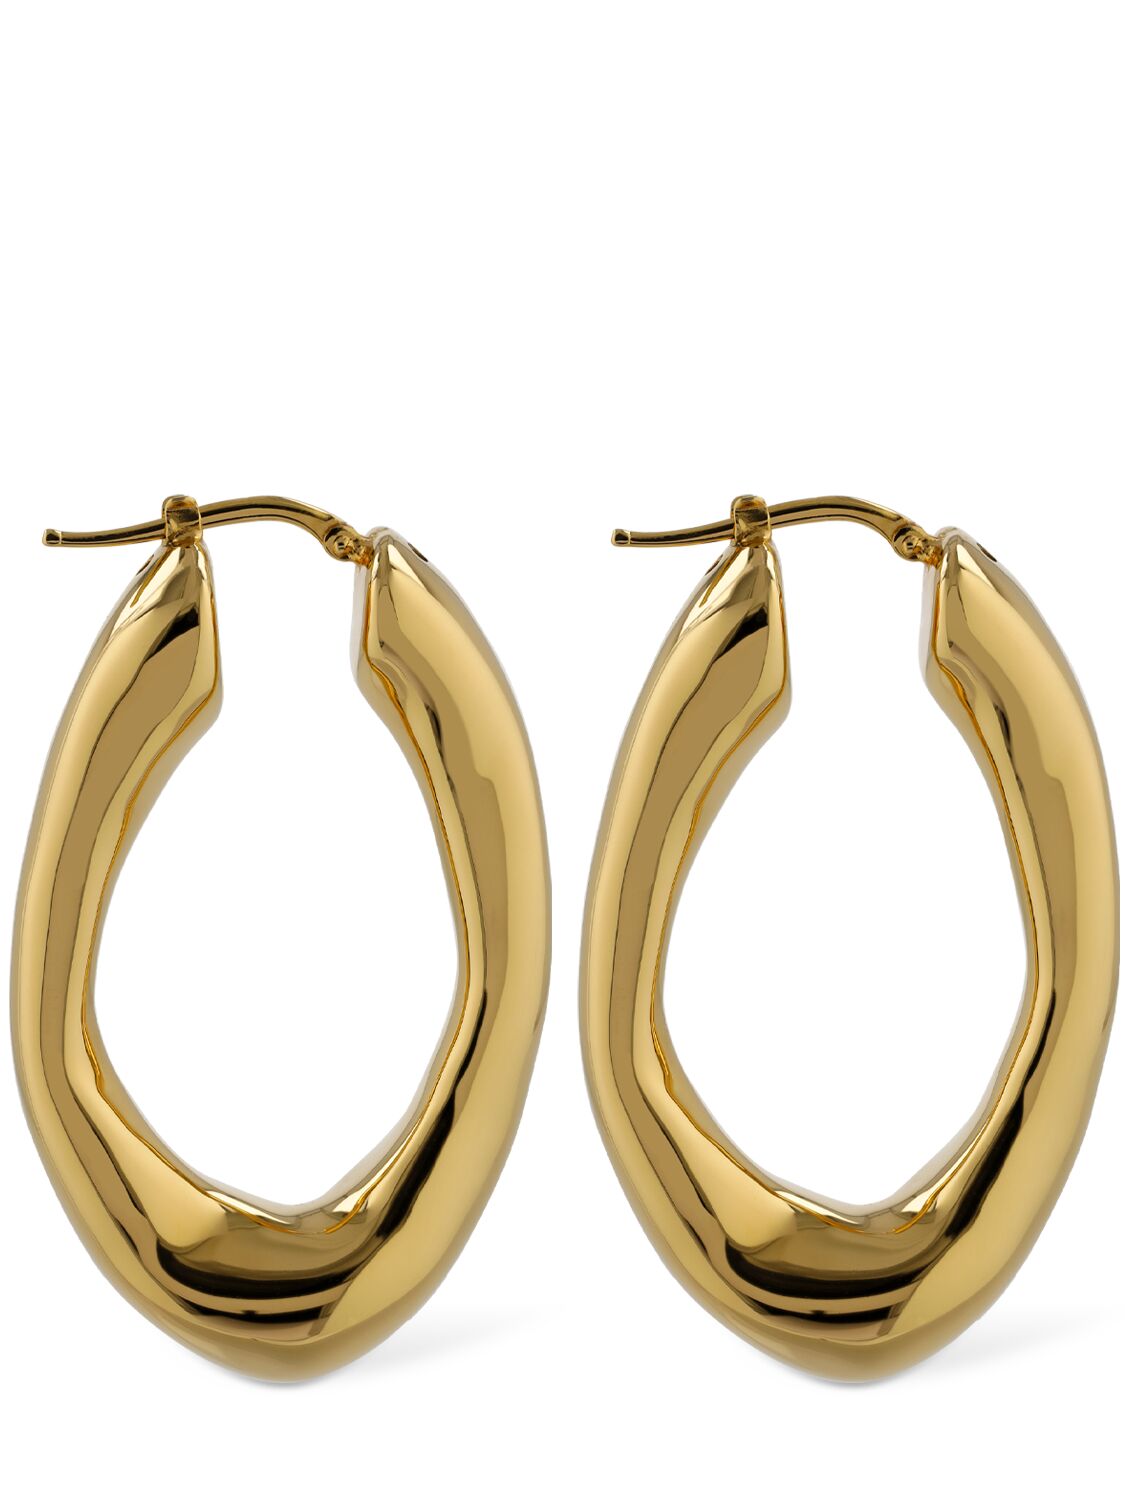 Jil Sander Bw5 2 Medium Hoop Earrings In Gold